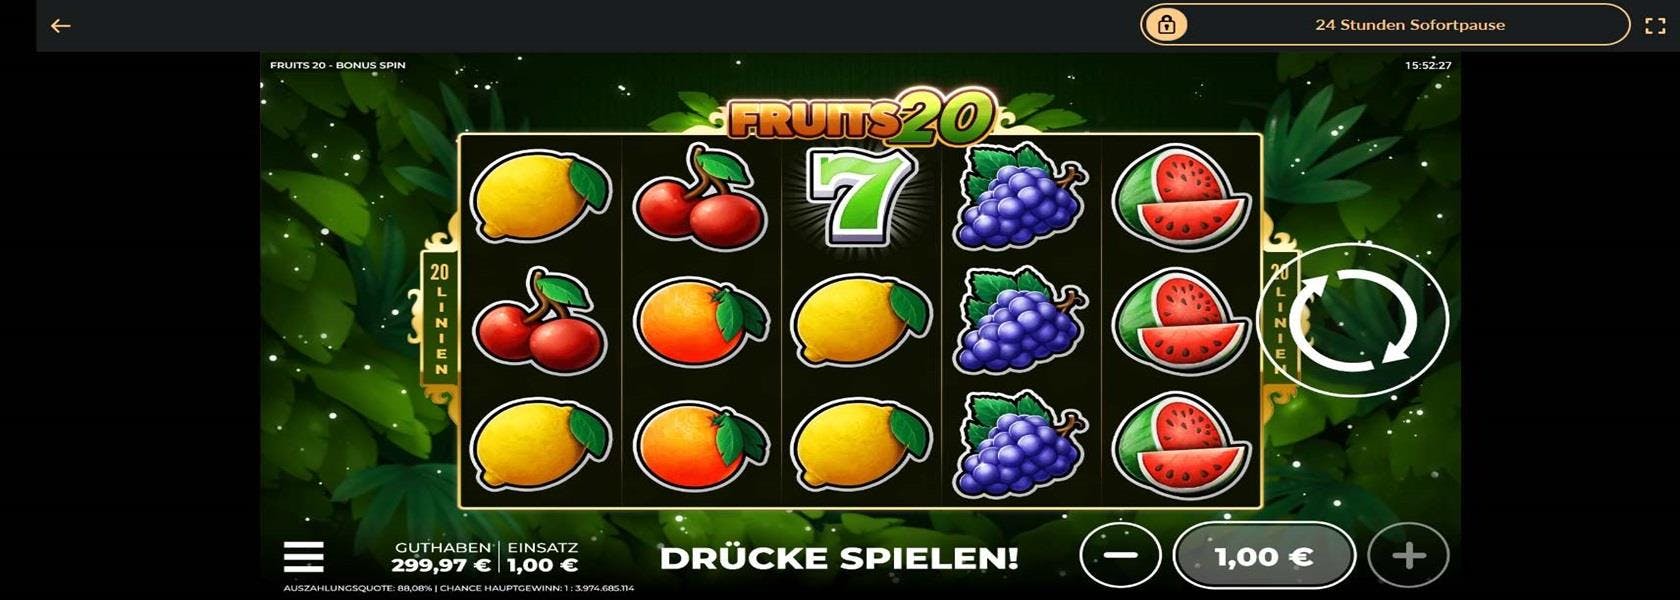 Fruits 20 ist ein Online-Slot-Klassiker im Retro-Stil mit den beliebten Früchtesymbolen.